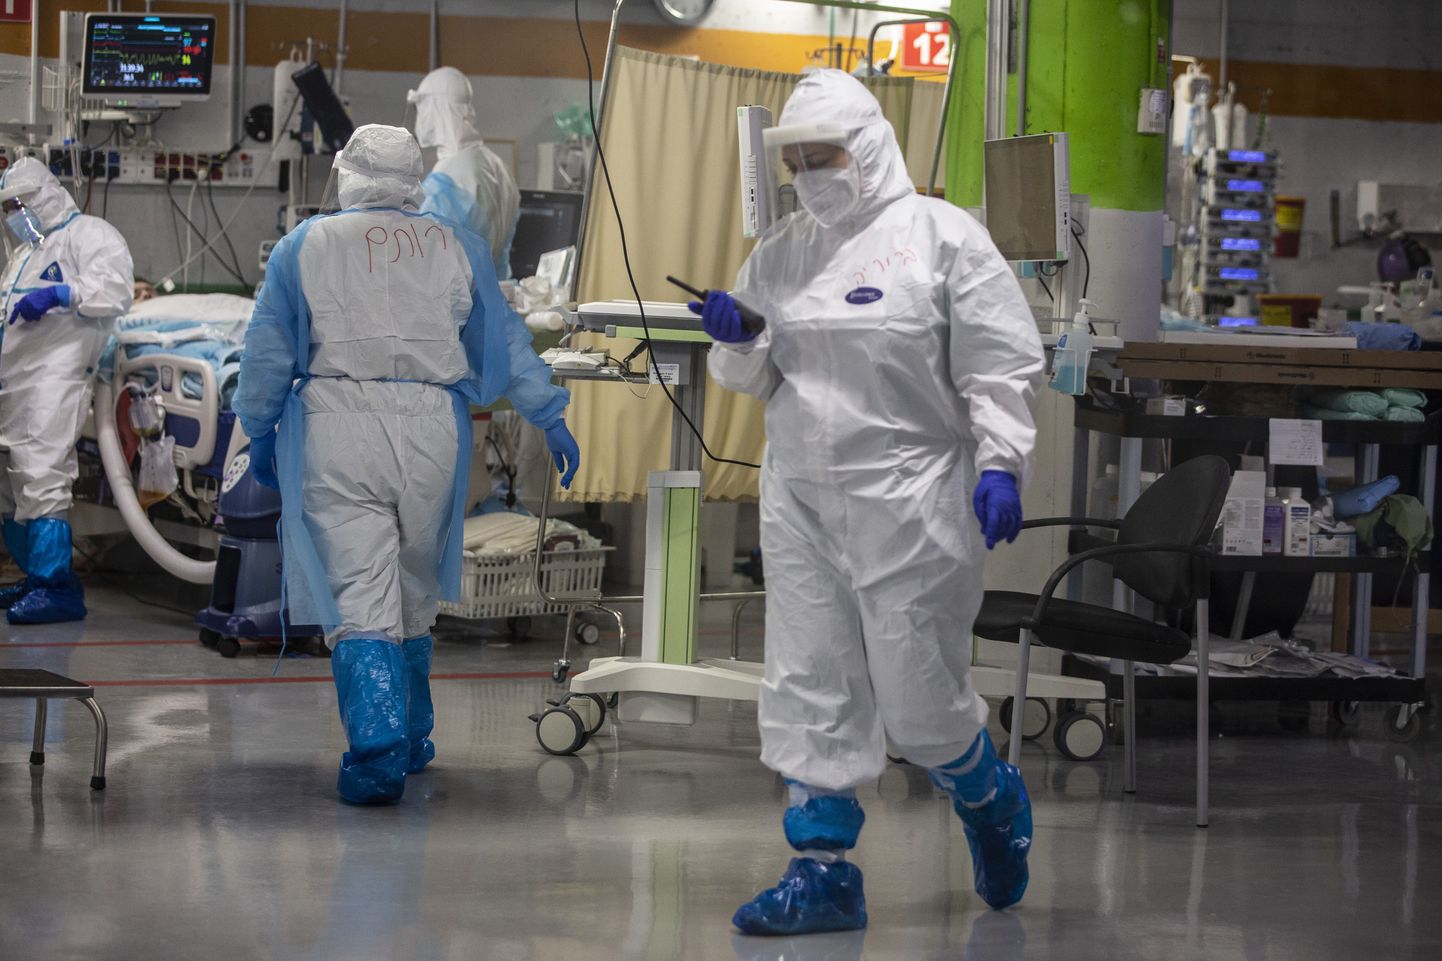 Meditsiinipersonal koroonaviiruse uue puhangu ajal Iisraeli suurima haigla, Tel Avivi lähedal asuva Sheba Meditsiinikeskuse intensiivraviosakonnas. 19. juuli 2020.a.